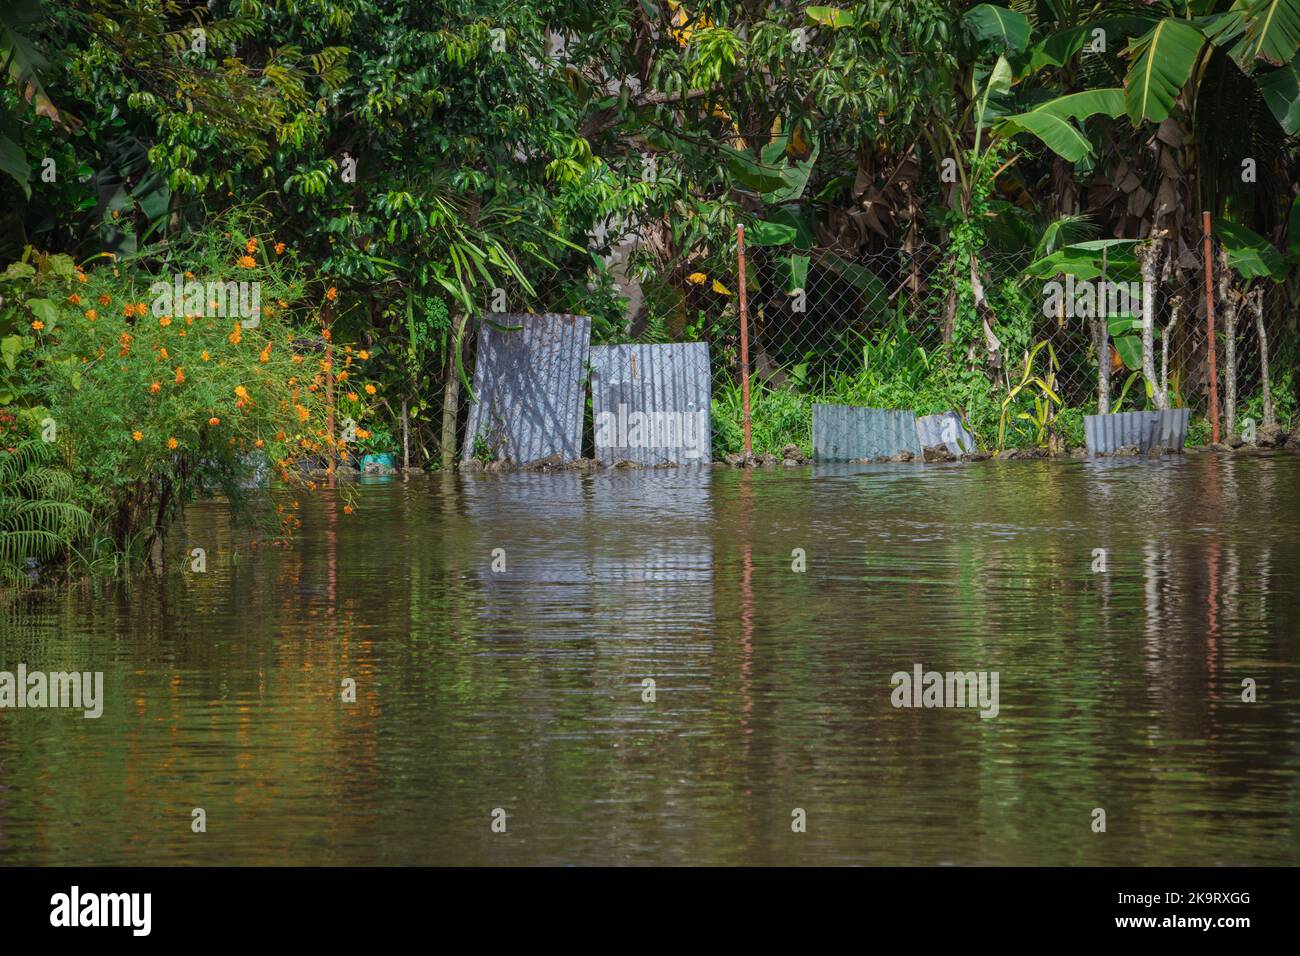 La tempête tropicale grave Paeng ou Nalgae a apporté des inondations et des pluies torrentielles au pays. Vue sur une rue inondée. Banque D'Images